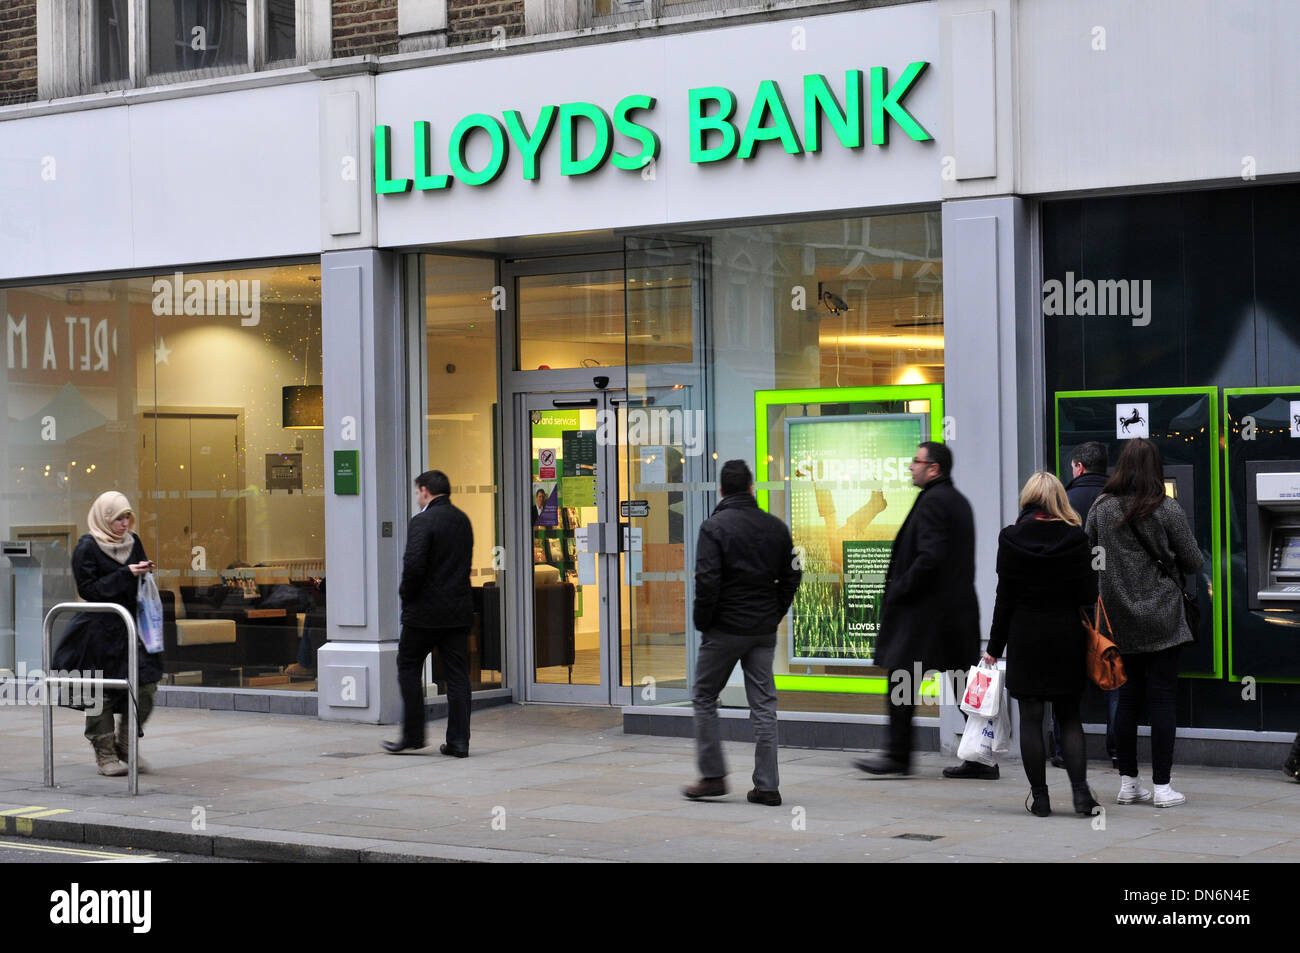 Une vue générale de la Lloyds Bank, Londres, UK Banque D'Images